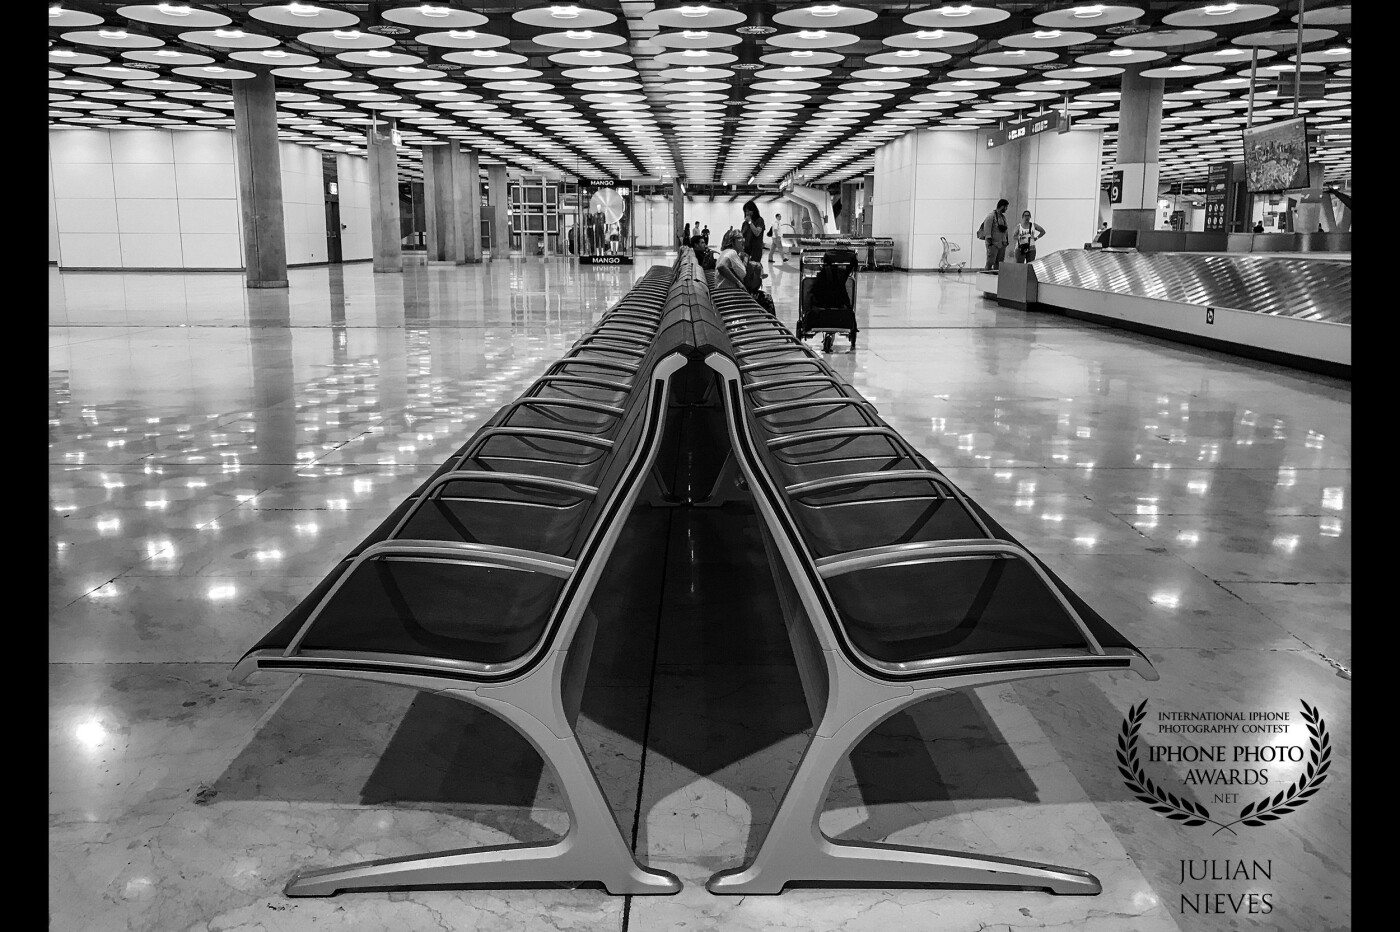 Si hay un el aeropuerto que de juego a la hora de hacer fotografías, ese es el Adolfo Suárez en Barajas-Madrid, terminal T4, su peculiar arquitectura y decoración lo hace muy interesante para el fotógrafo.